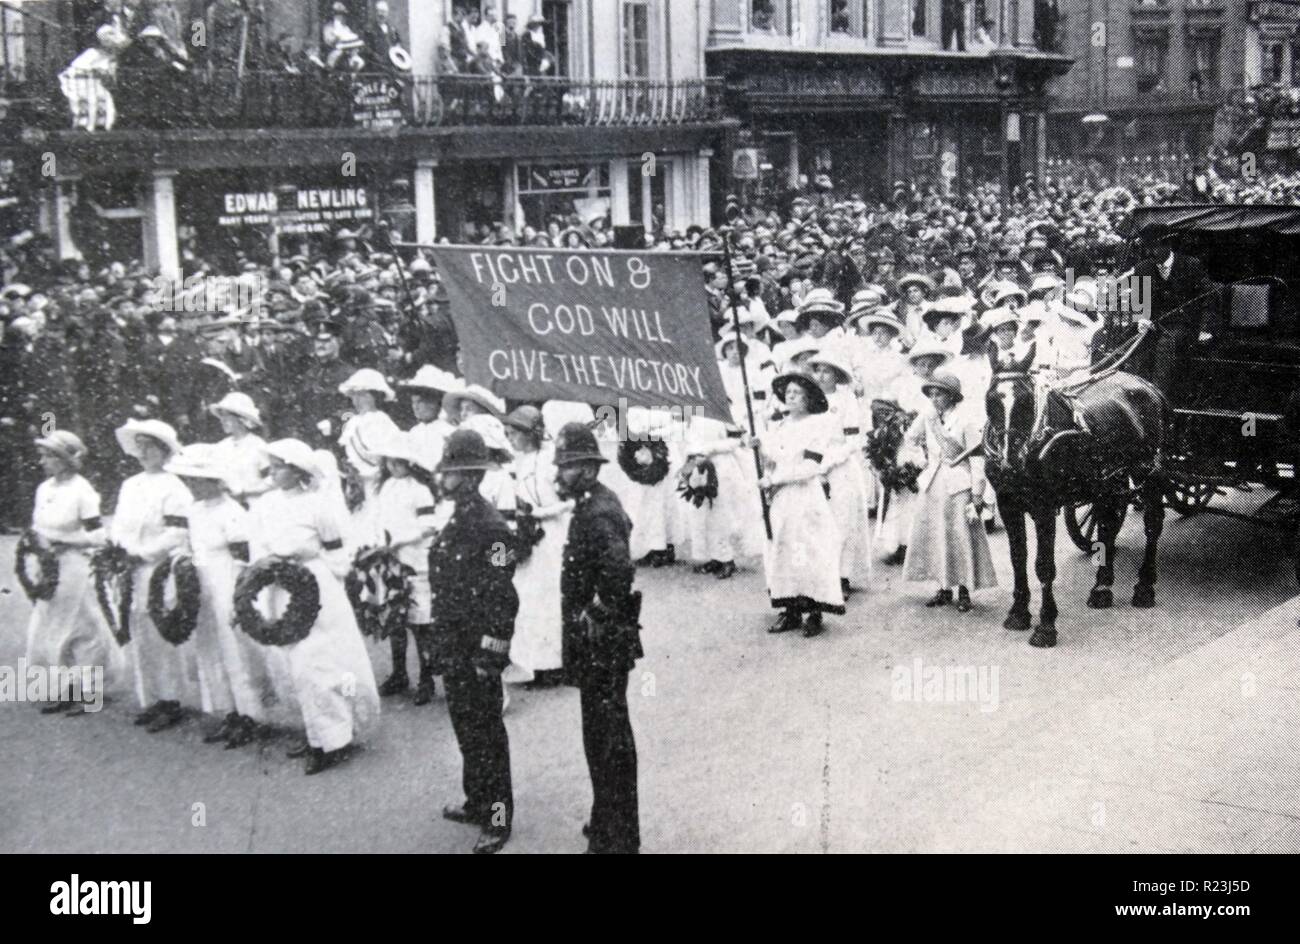 Beim Derby im Juni 1913 eine Suffragette namens Emily Davison warf sich vor Pferd des Königs an Tattenham Ecke und starb an den Verletzungen, die sie empfing. Ihre Beerdigung wurde anlässlich einer Suffragette Parade gemacht. Stockfoto